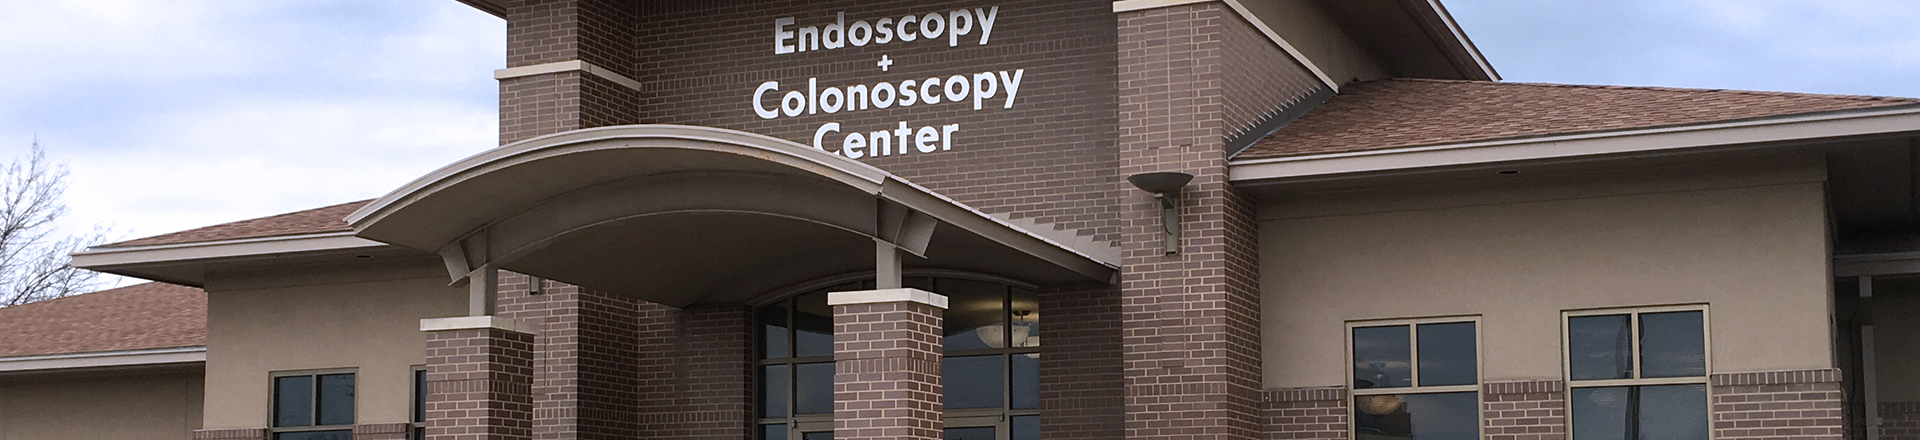 The Endoscopy and Colonoscopy Center